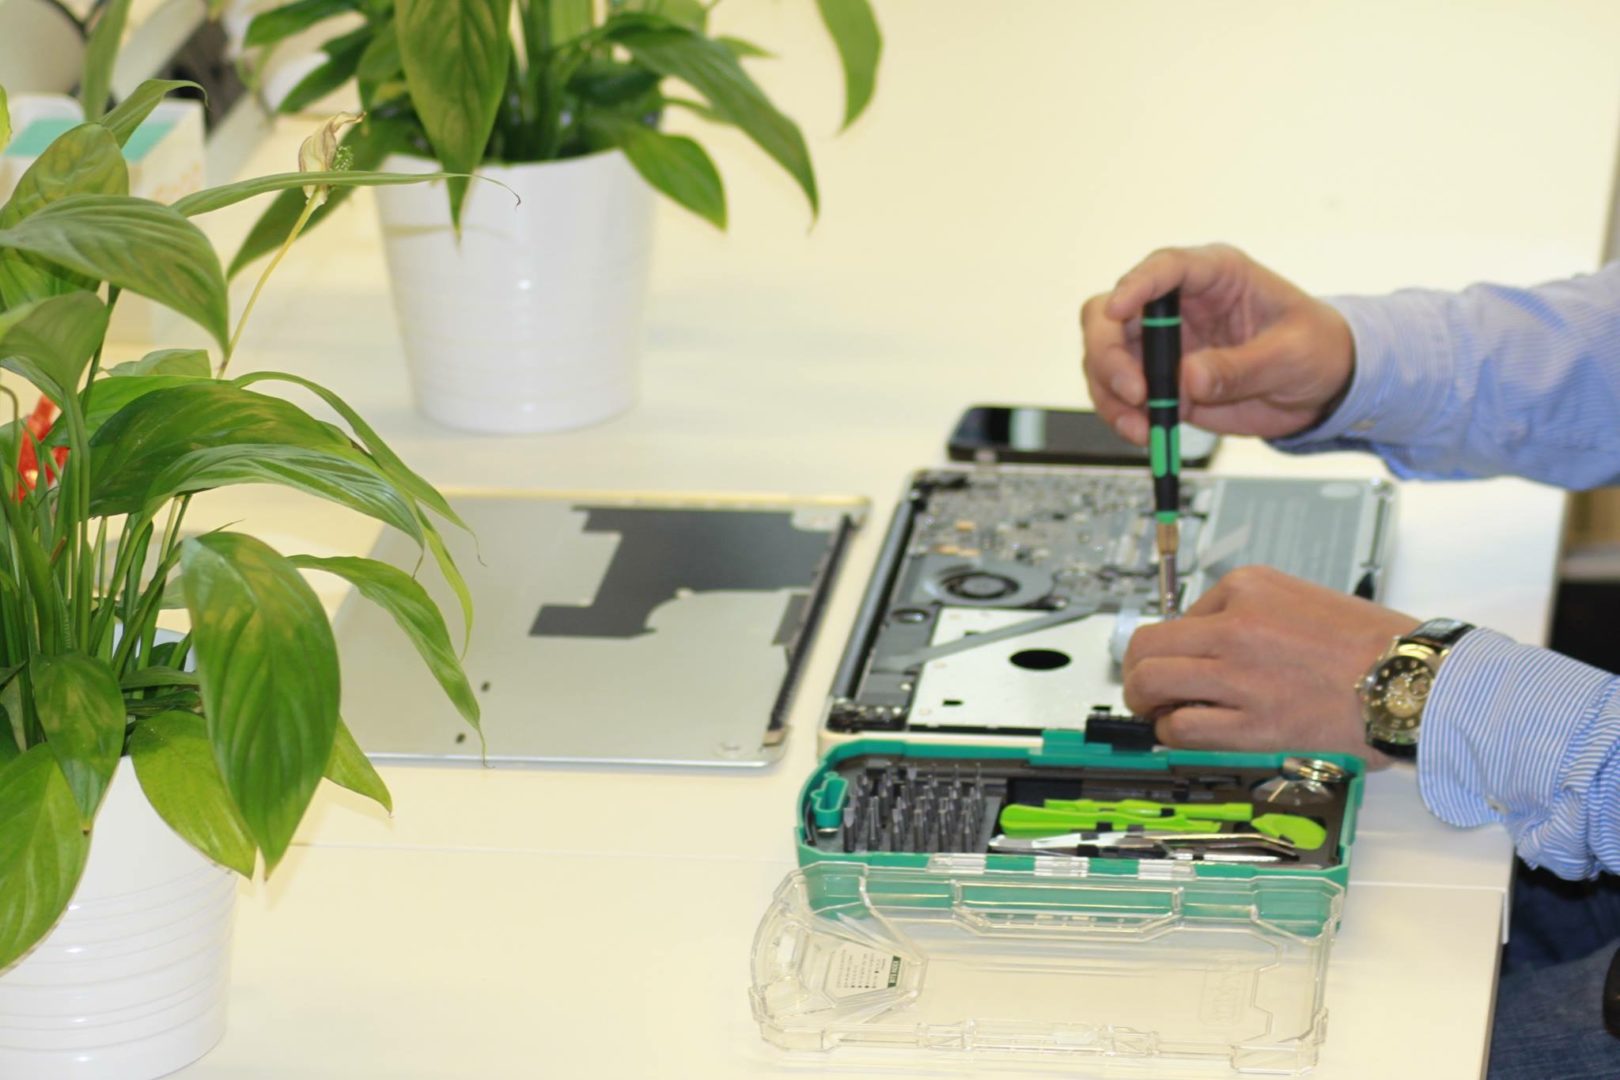 Workshop reuse laptop